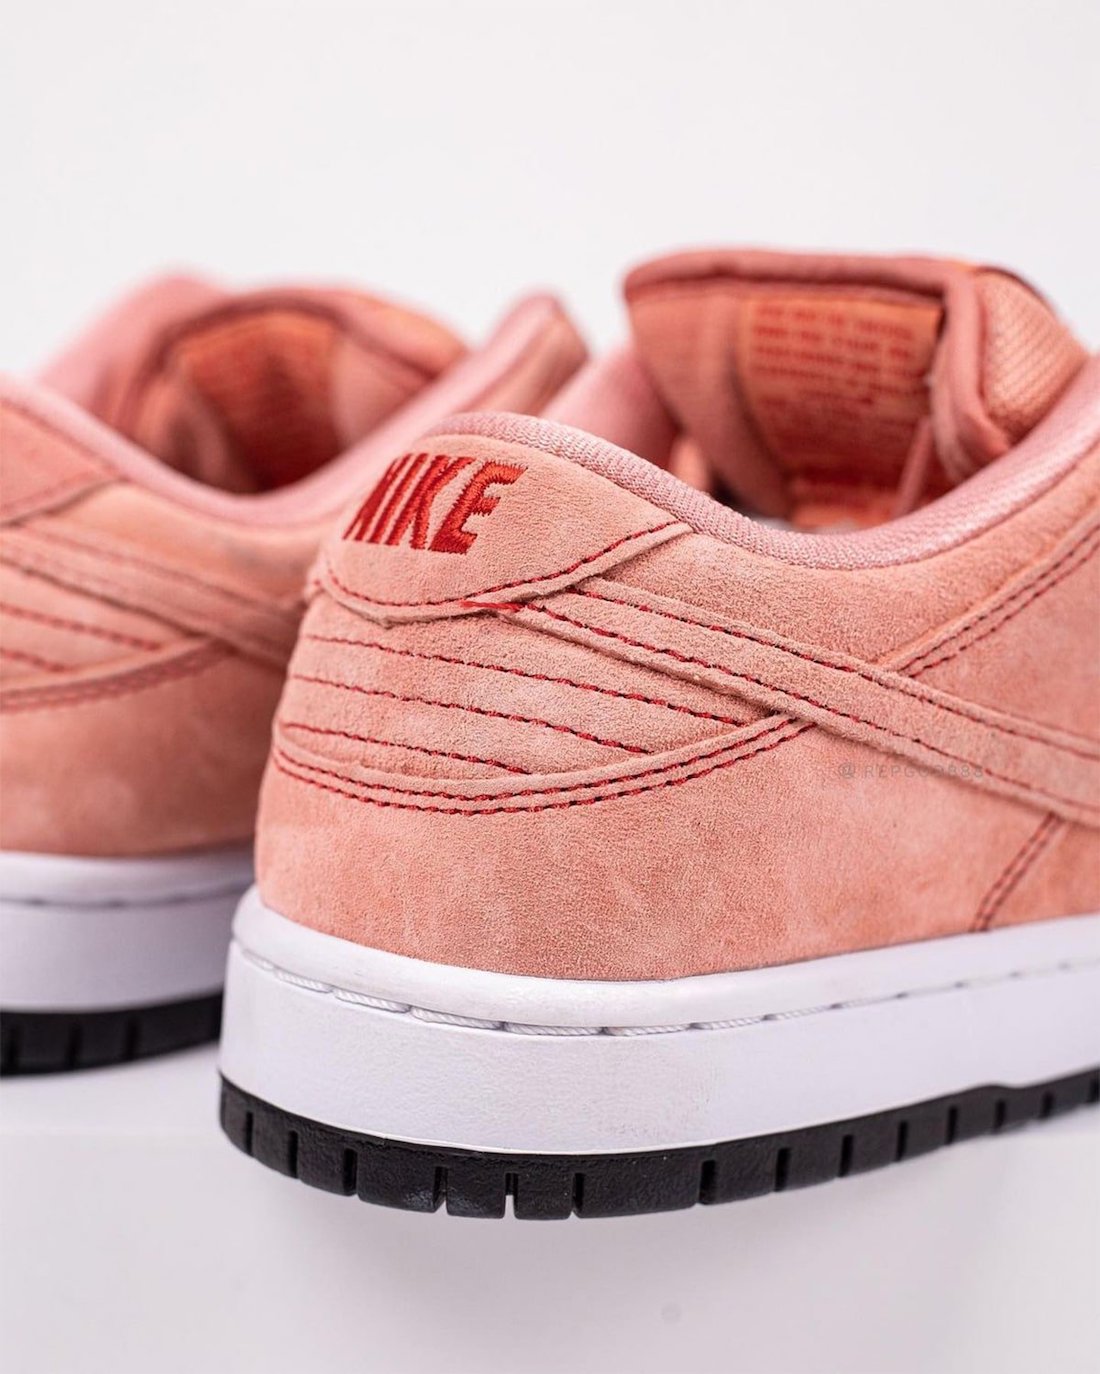 Nike SB Dunk Low Atomic Pink Pig CV1655-600 Release Date